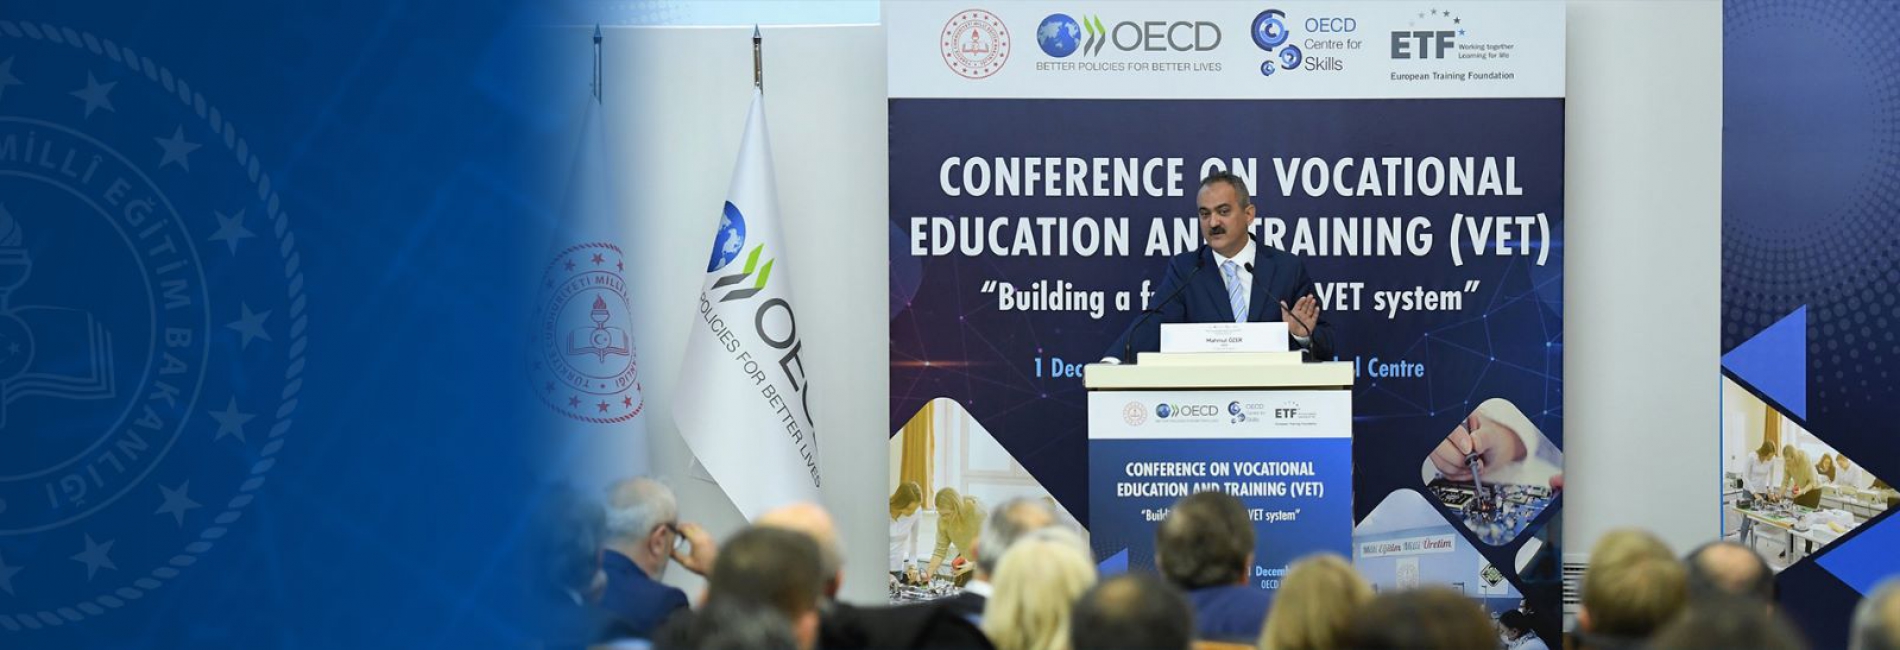 Bakan Özer, Mesleki Eğitim Reformunu ve Türkiye'nin Bu Alandaki Deneyimlerini, İstanbul'da Düzenlenen OECD Mesleki Eğitim Zirvesi'nde Paylaştı